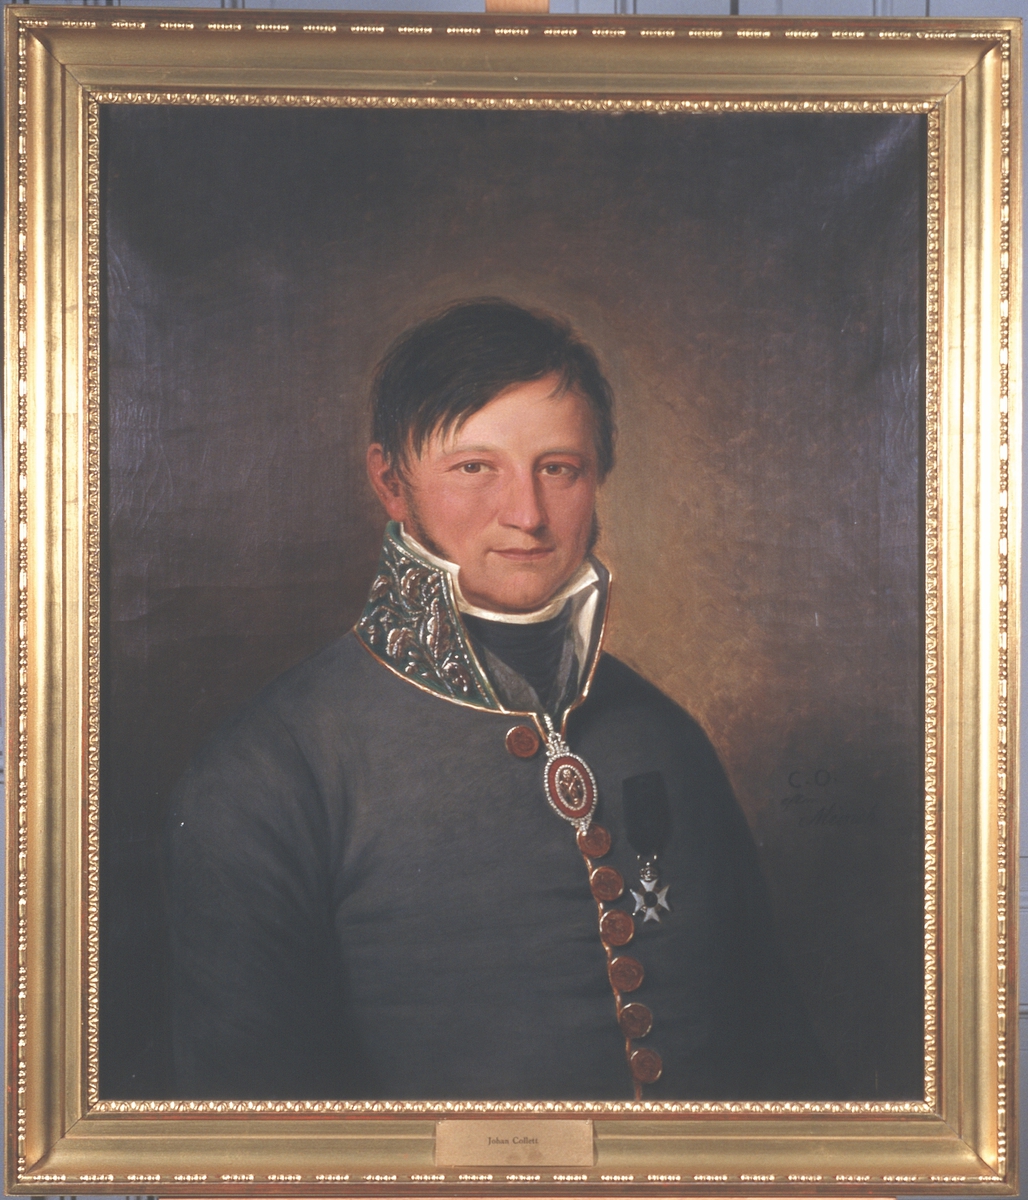 Portrett av Johan Collett. Mørk grå uniform, medalje i bånd om halsen, orden festet på brystet.